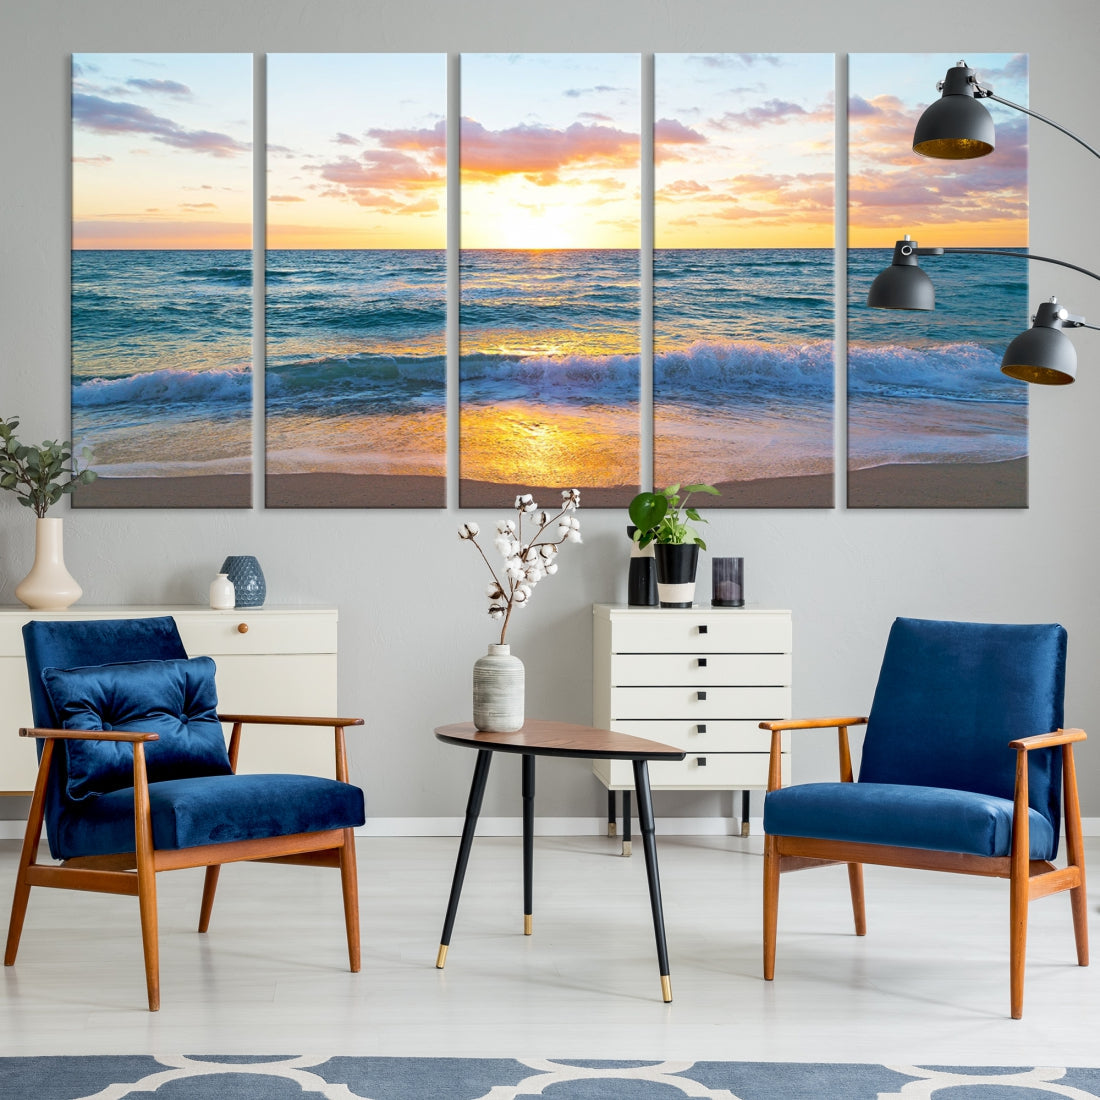 Ocean Beach Canvas Wall Art Beach Canvas, Coastal Artwork Print for Living Room Home Office Decor, Beach Wall Art, Sea